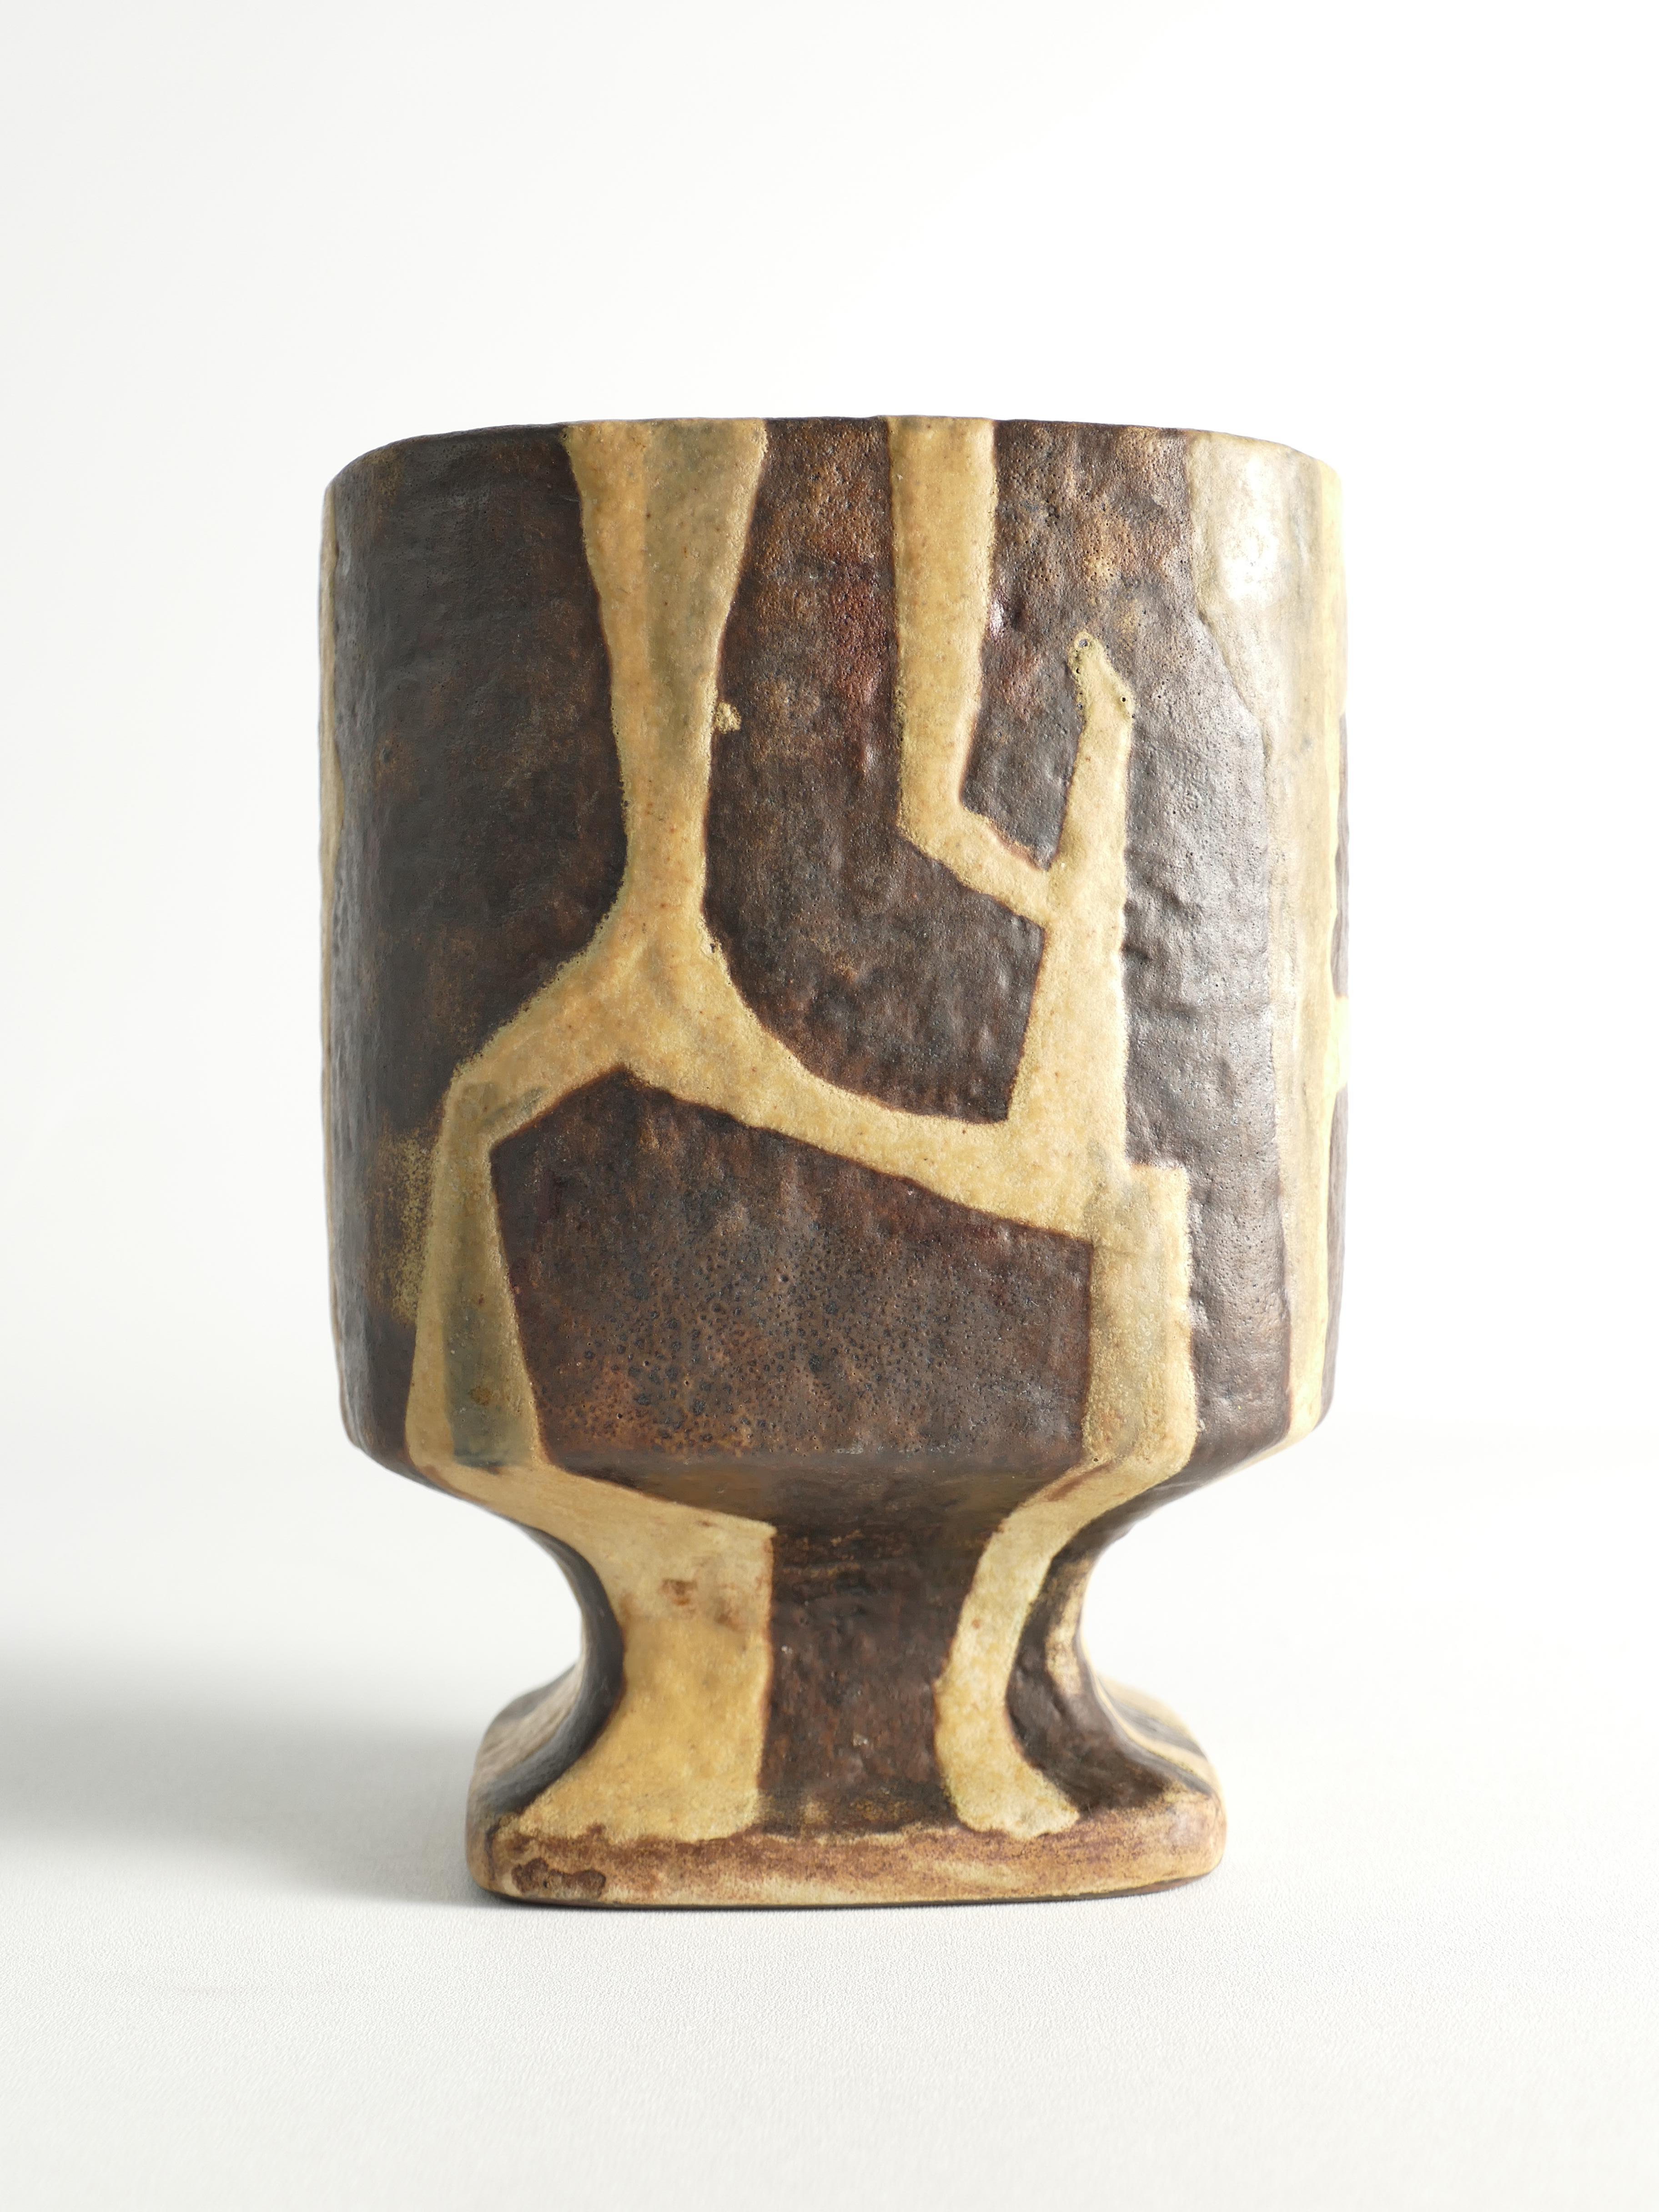 Il s'agit d'un rare vase en céramique produit par la Staatliche Majolika Manufaktur Karlsruhe, également connue sous le nom de Karlsruhe Majolika. Le vase a été conçu par Fridegart Glatzle, un éminent designer de l'après-guerre. Le vase présente un